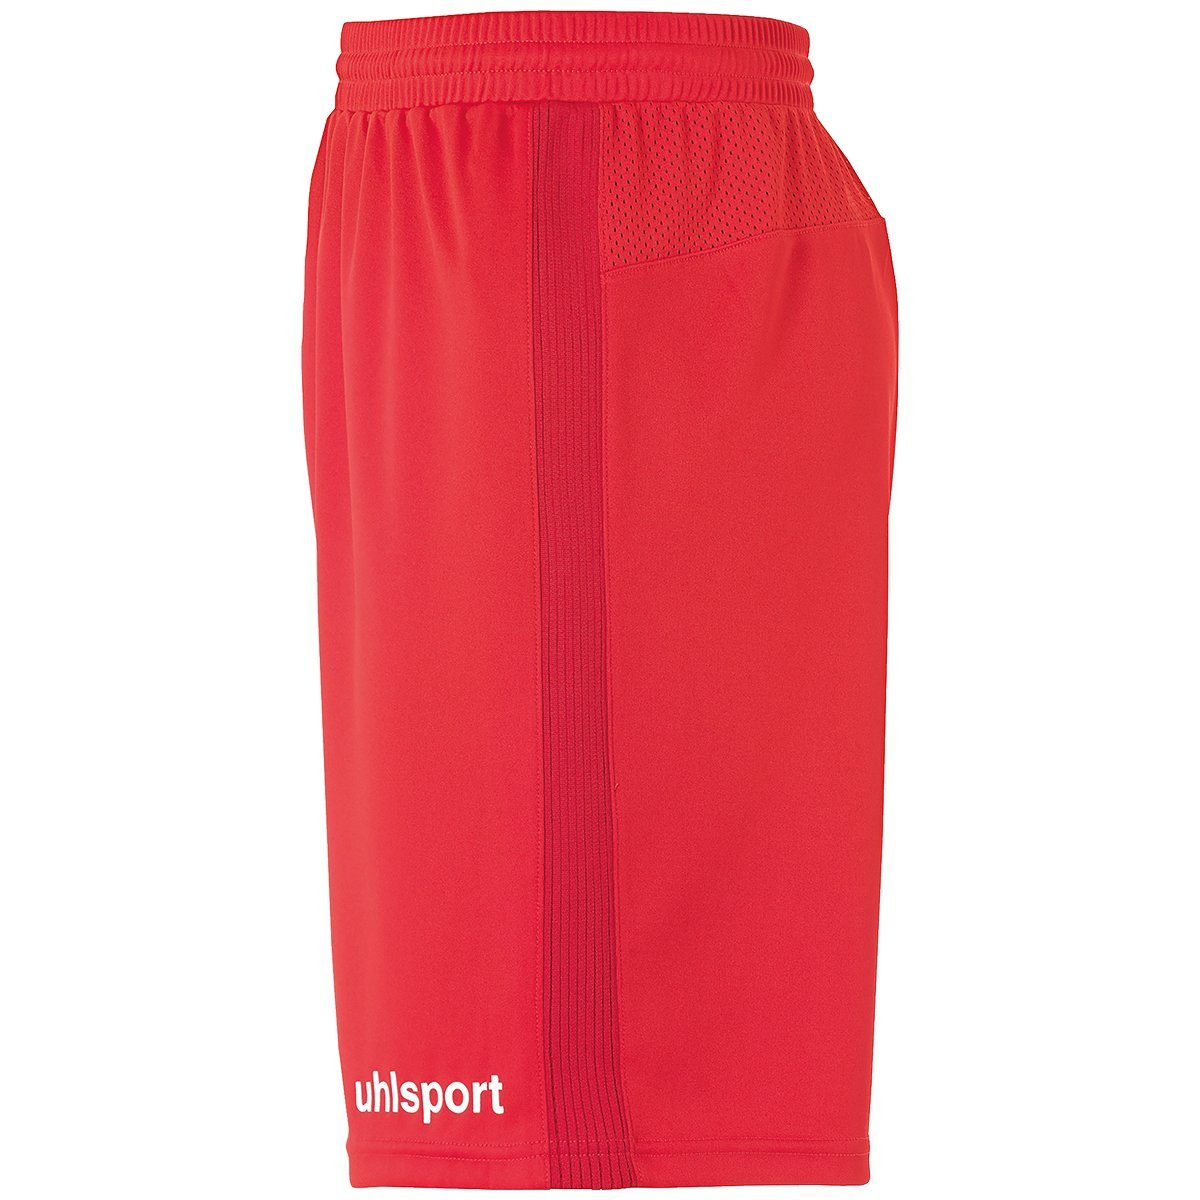 uhlsport PERFORMANCE rot/weiß Shorts Shorts uhlsport SHORTS